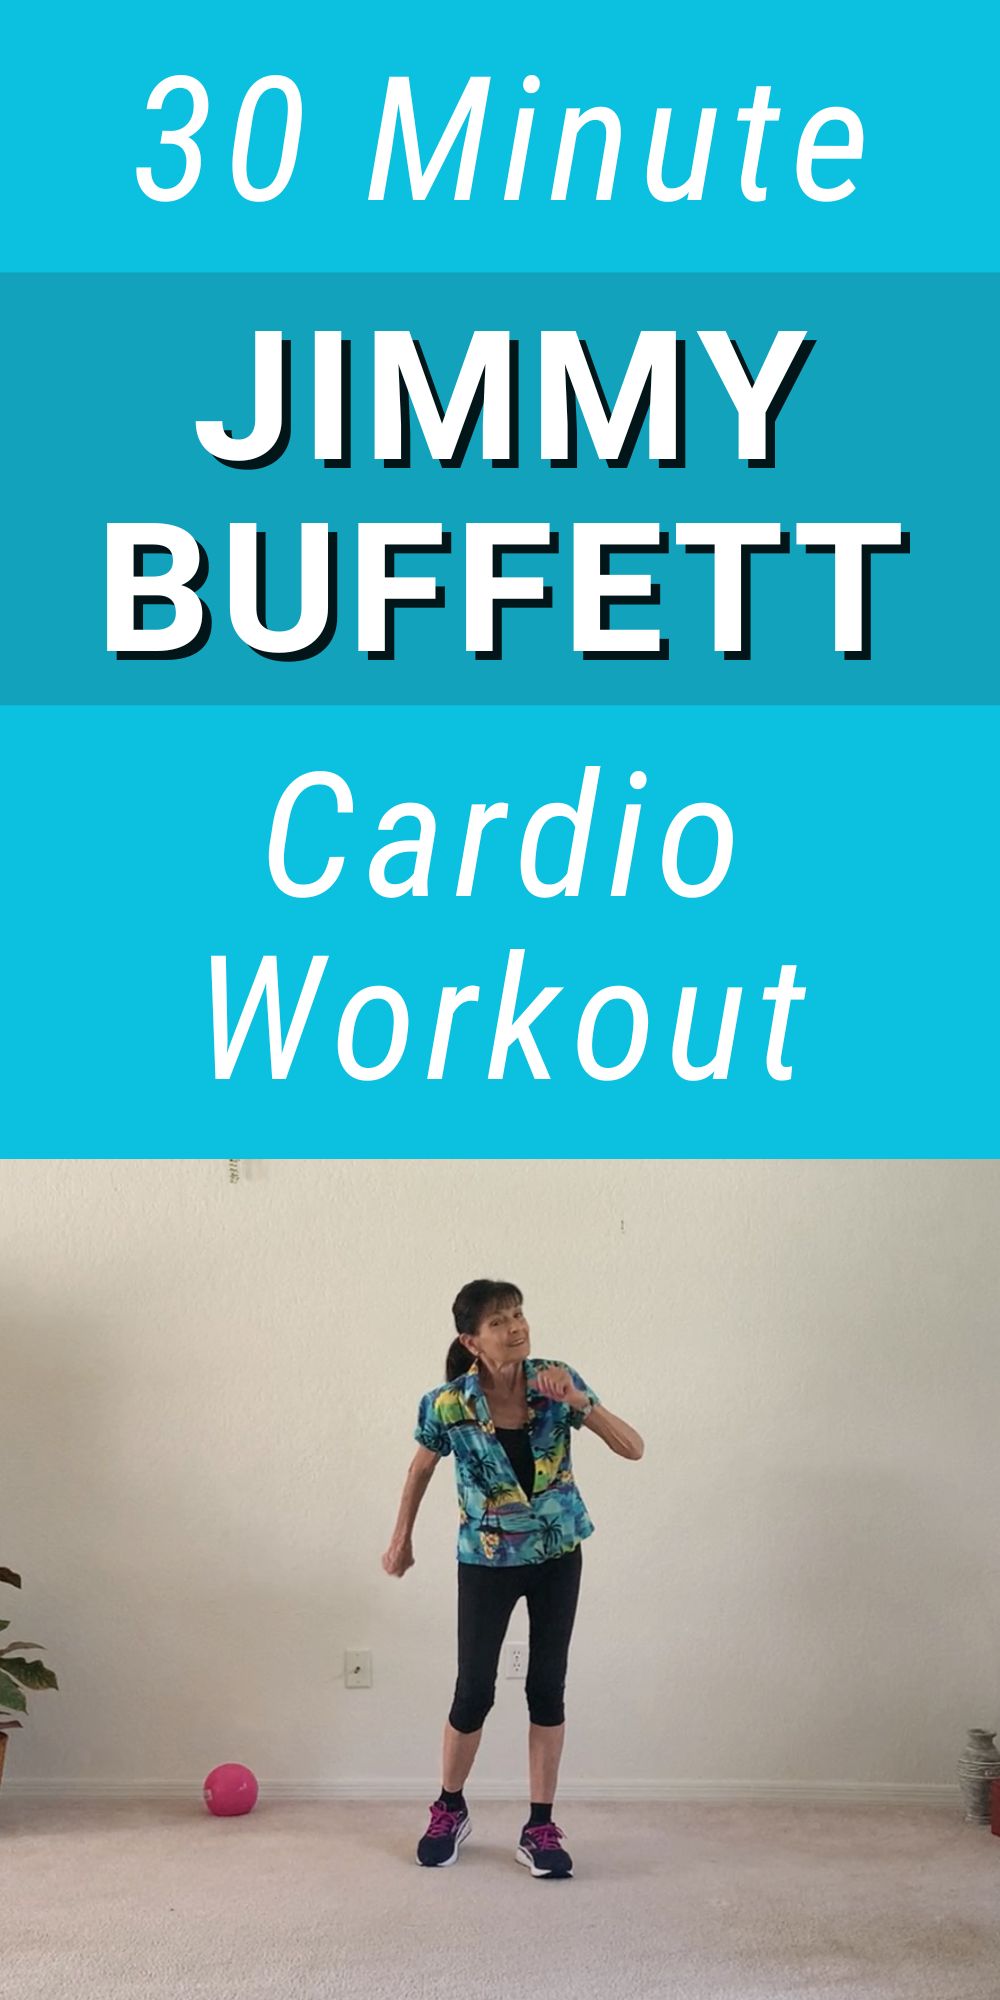 jimmy buffett cardio workout